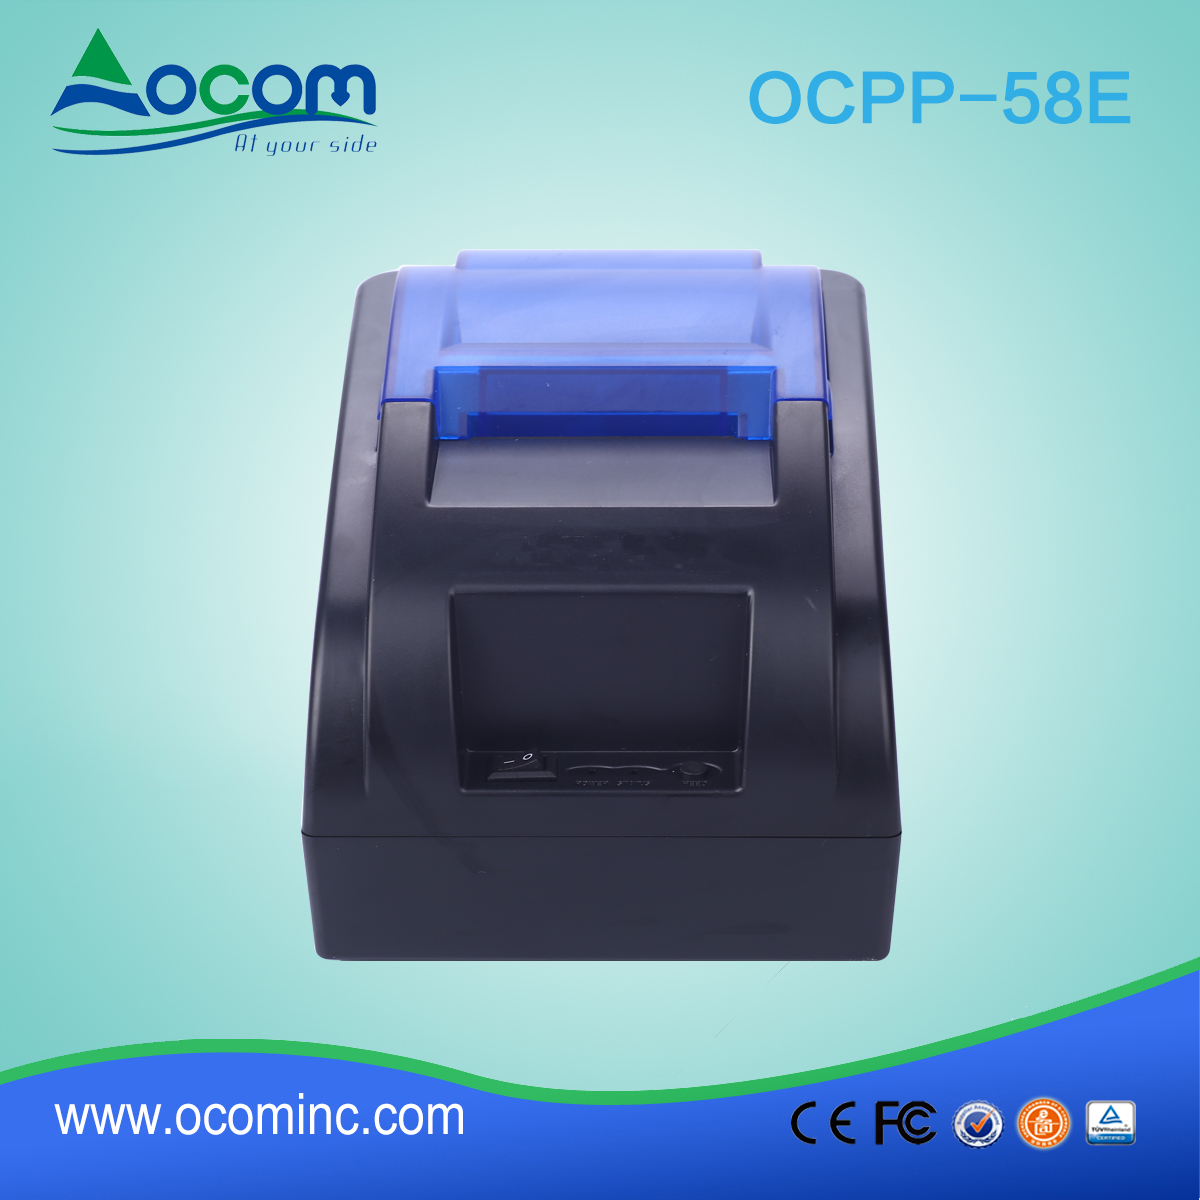 OCPP-58E Stampante per ricevute termica da 58 mm con alimentatore incorporato